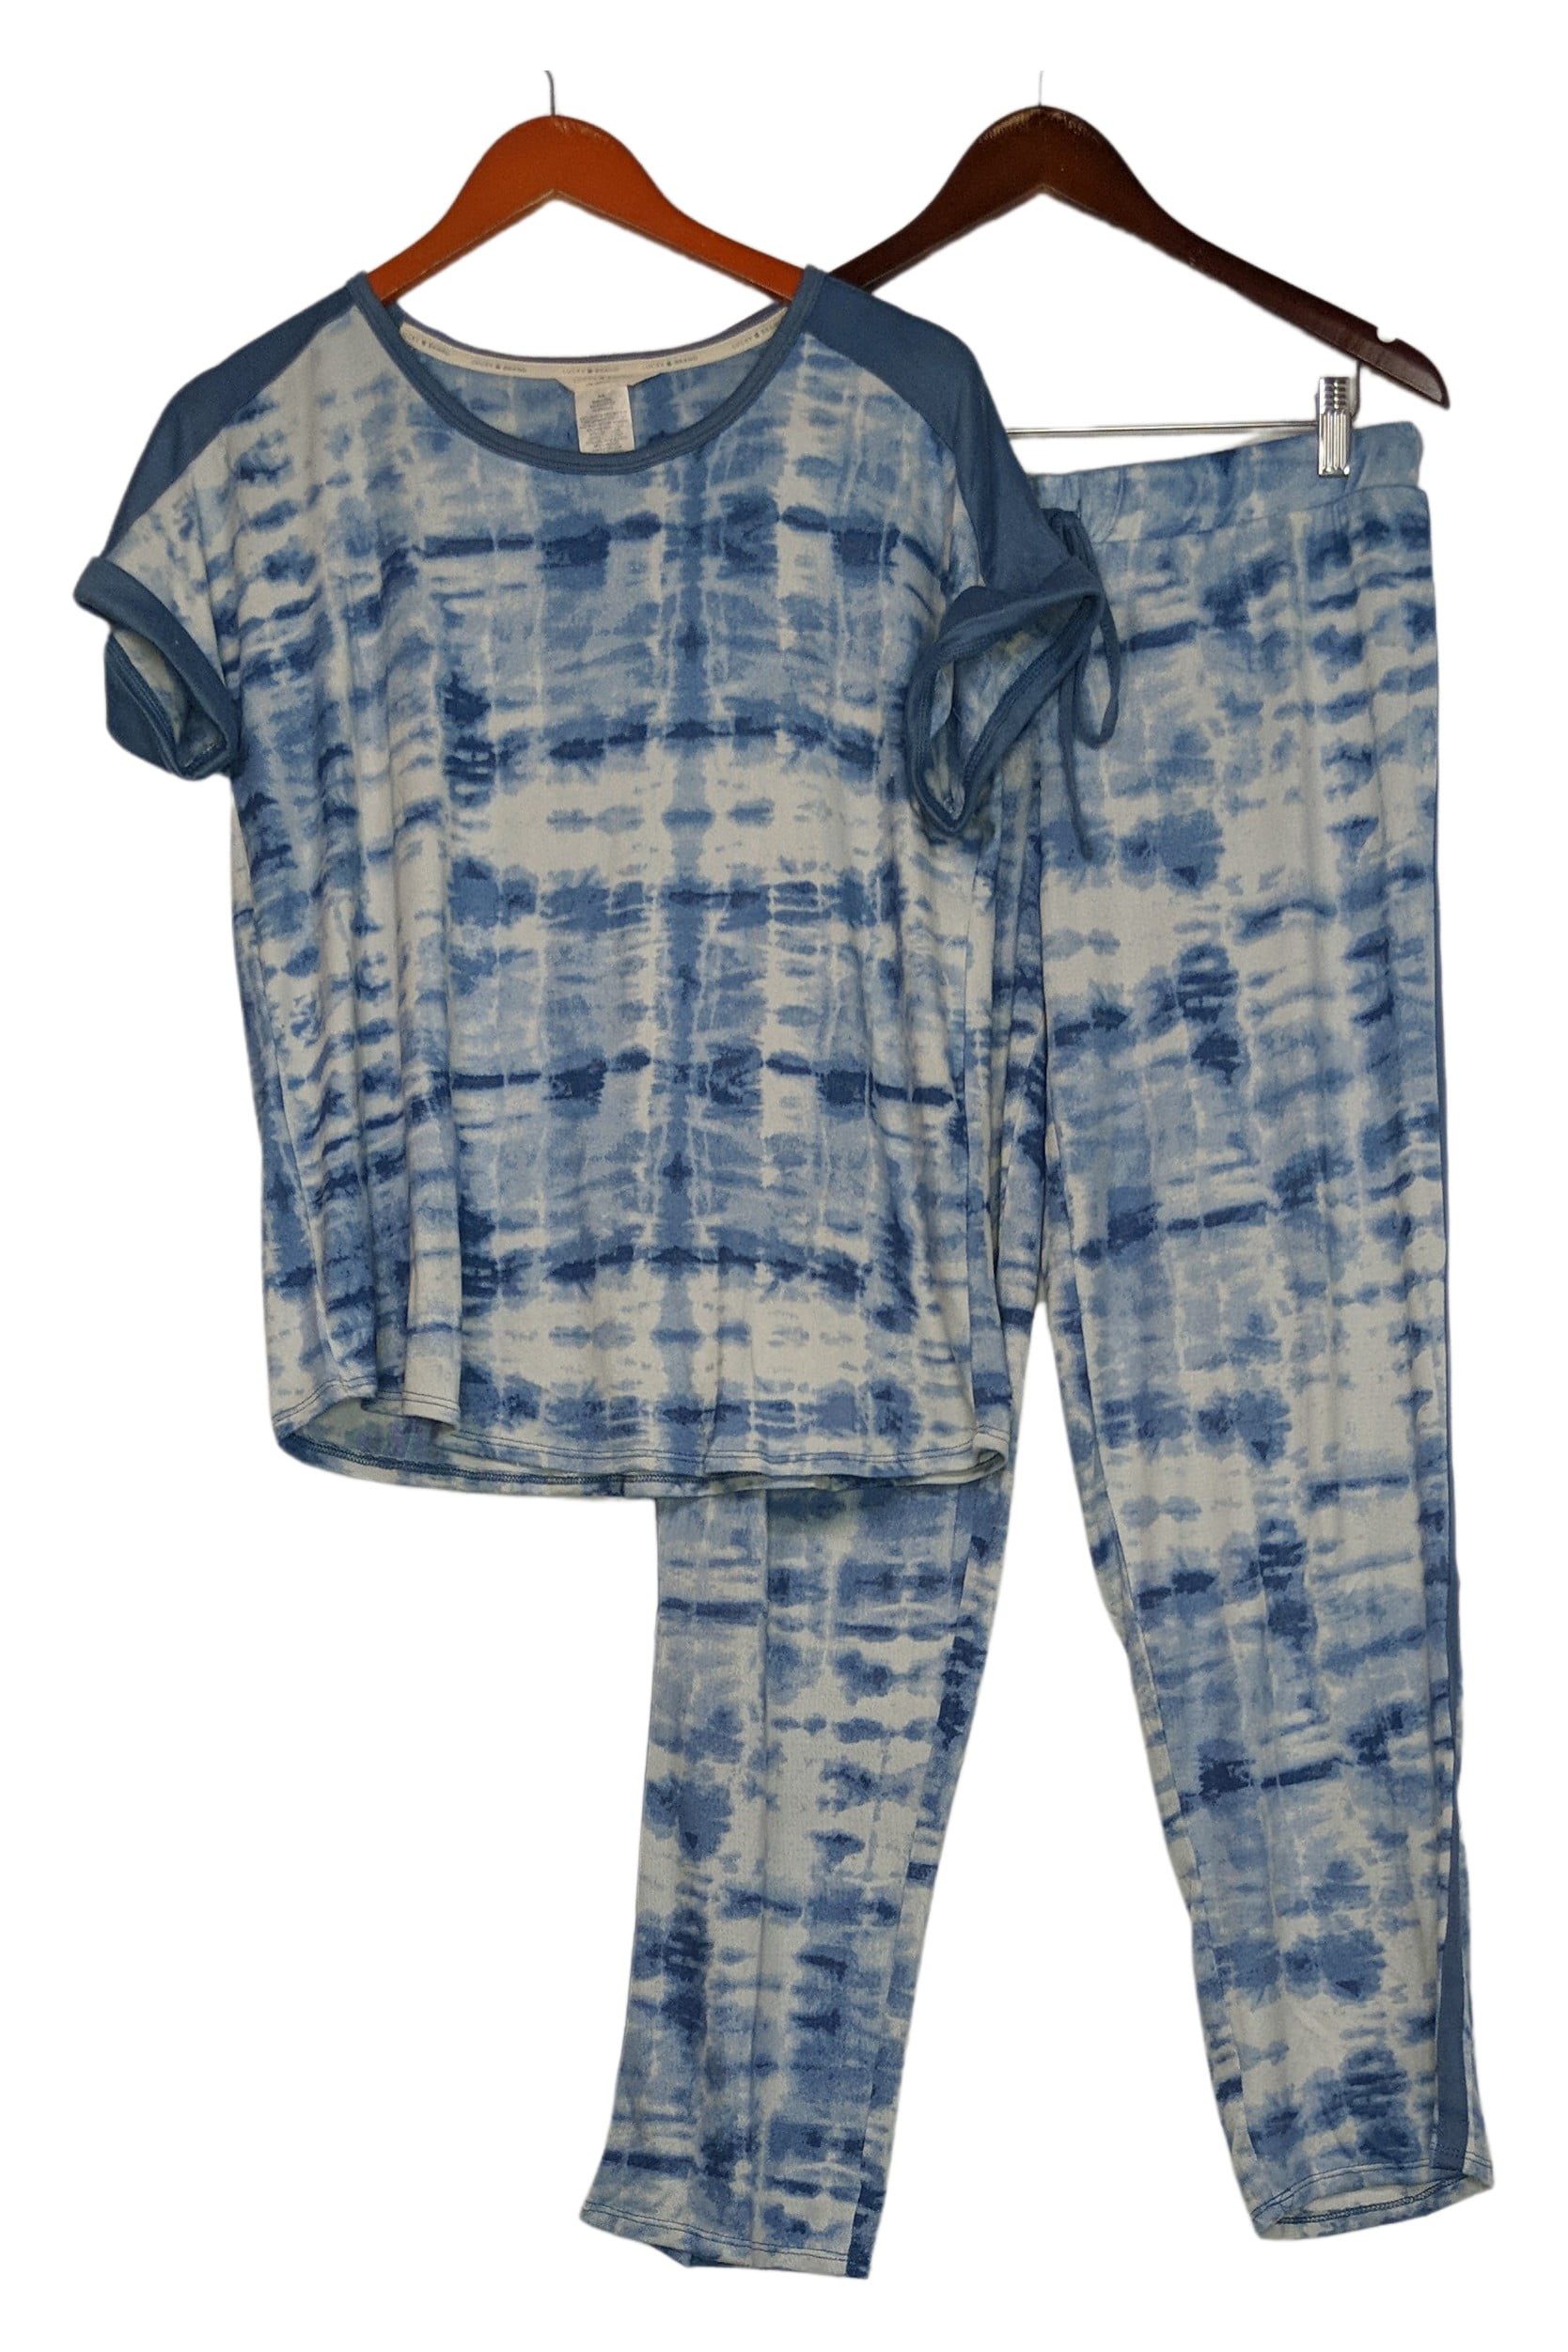 LUCKY BRAND Women's Gray Navy PJ's Small S 4-6 Stars Pajamas 4-Piece Lounge  NWT